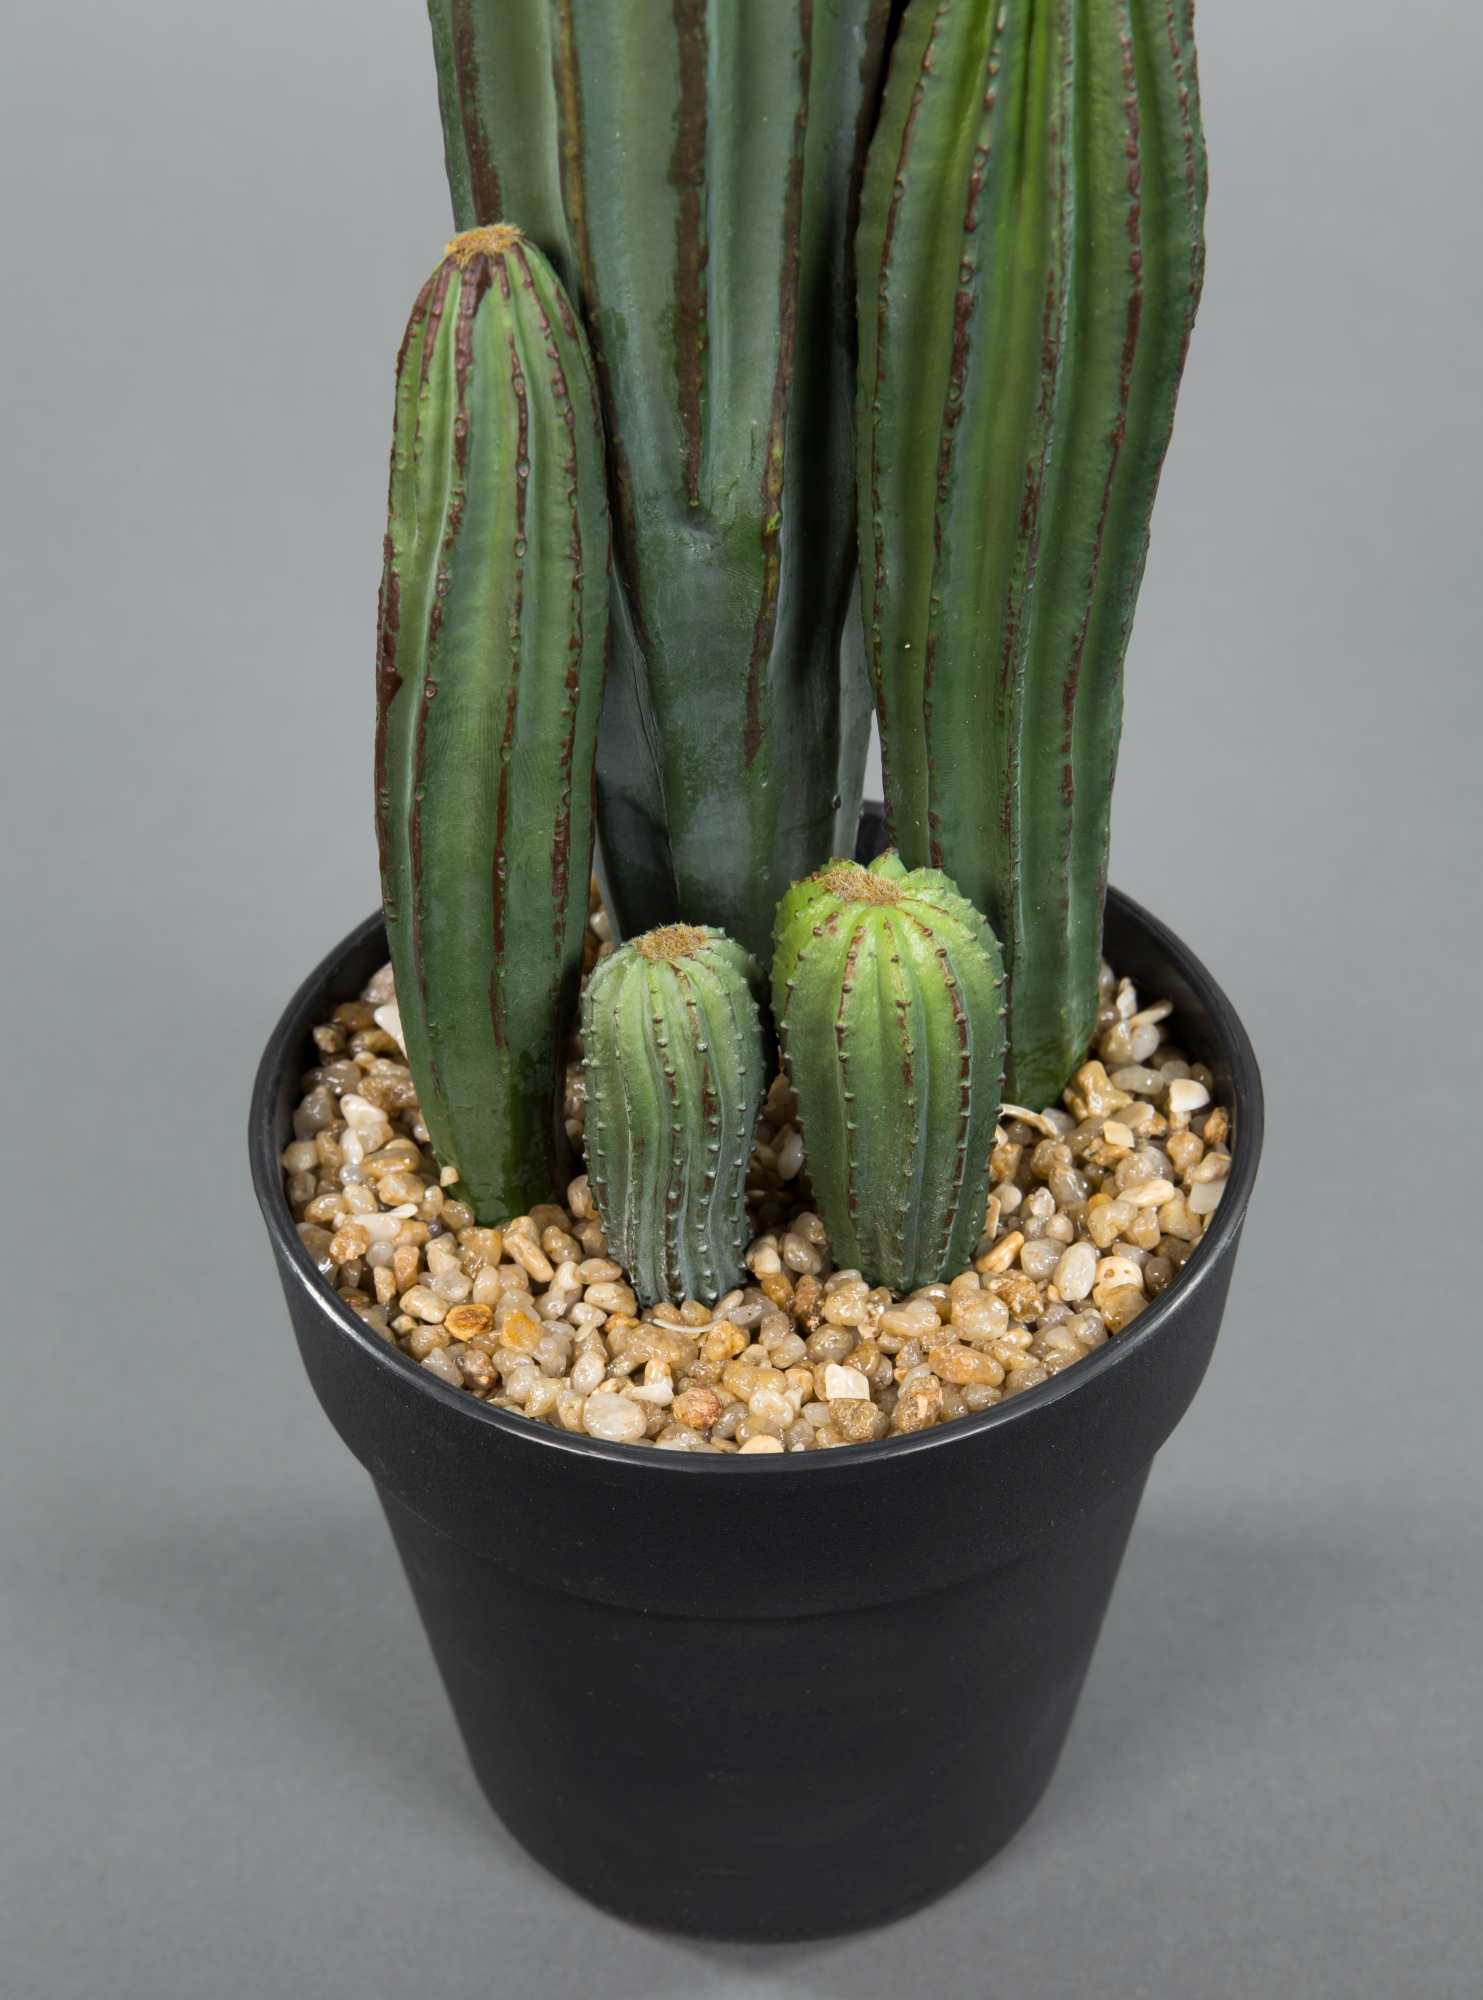 JA künstlicher Kakteen Kaktus Kunstpflanzen 36cm Pflanzen Säulenkaktus Topf im künstliche